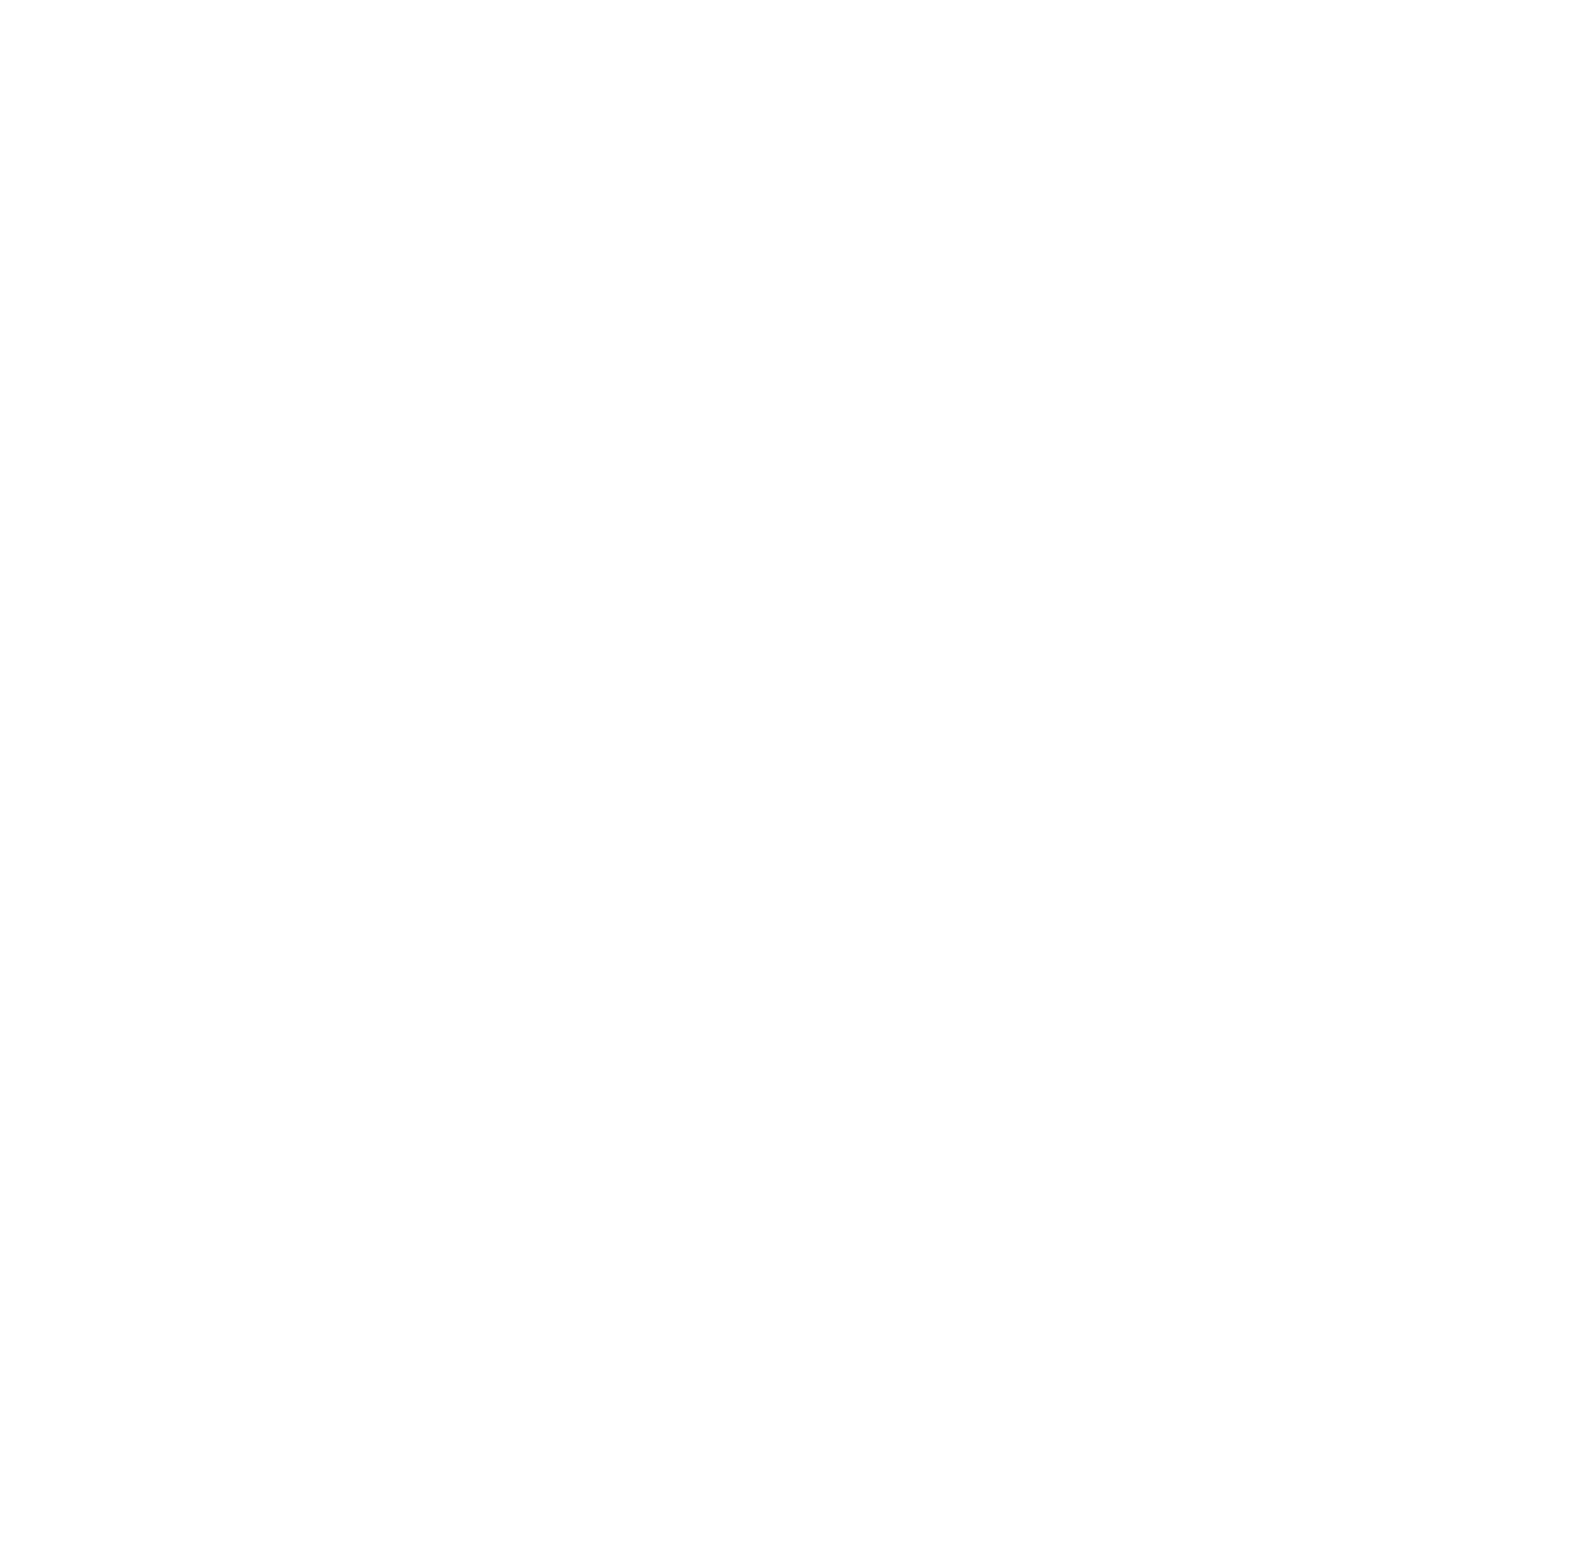 Encavis logo for dark backgrounds (transparent PNG)